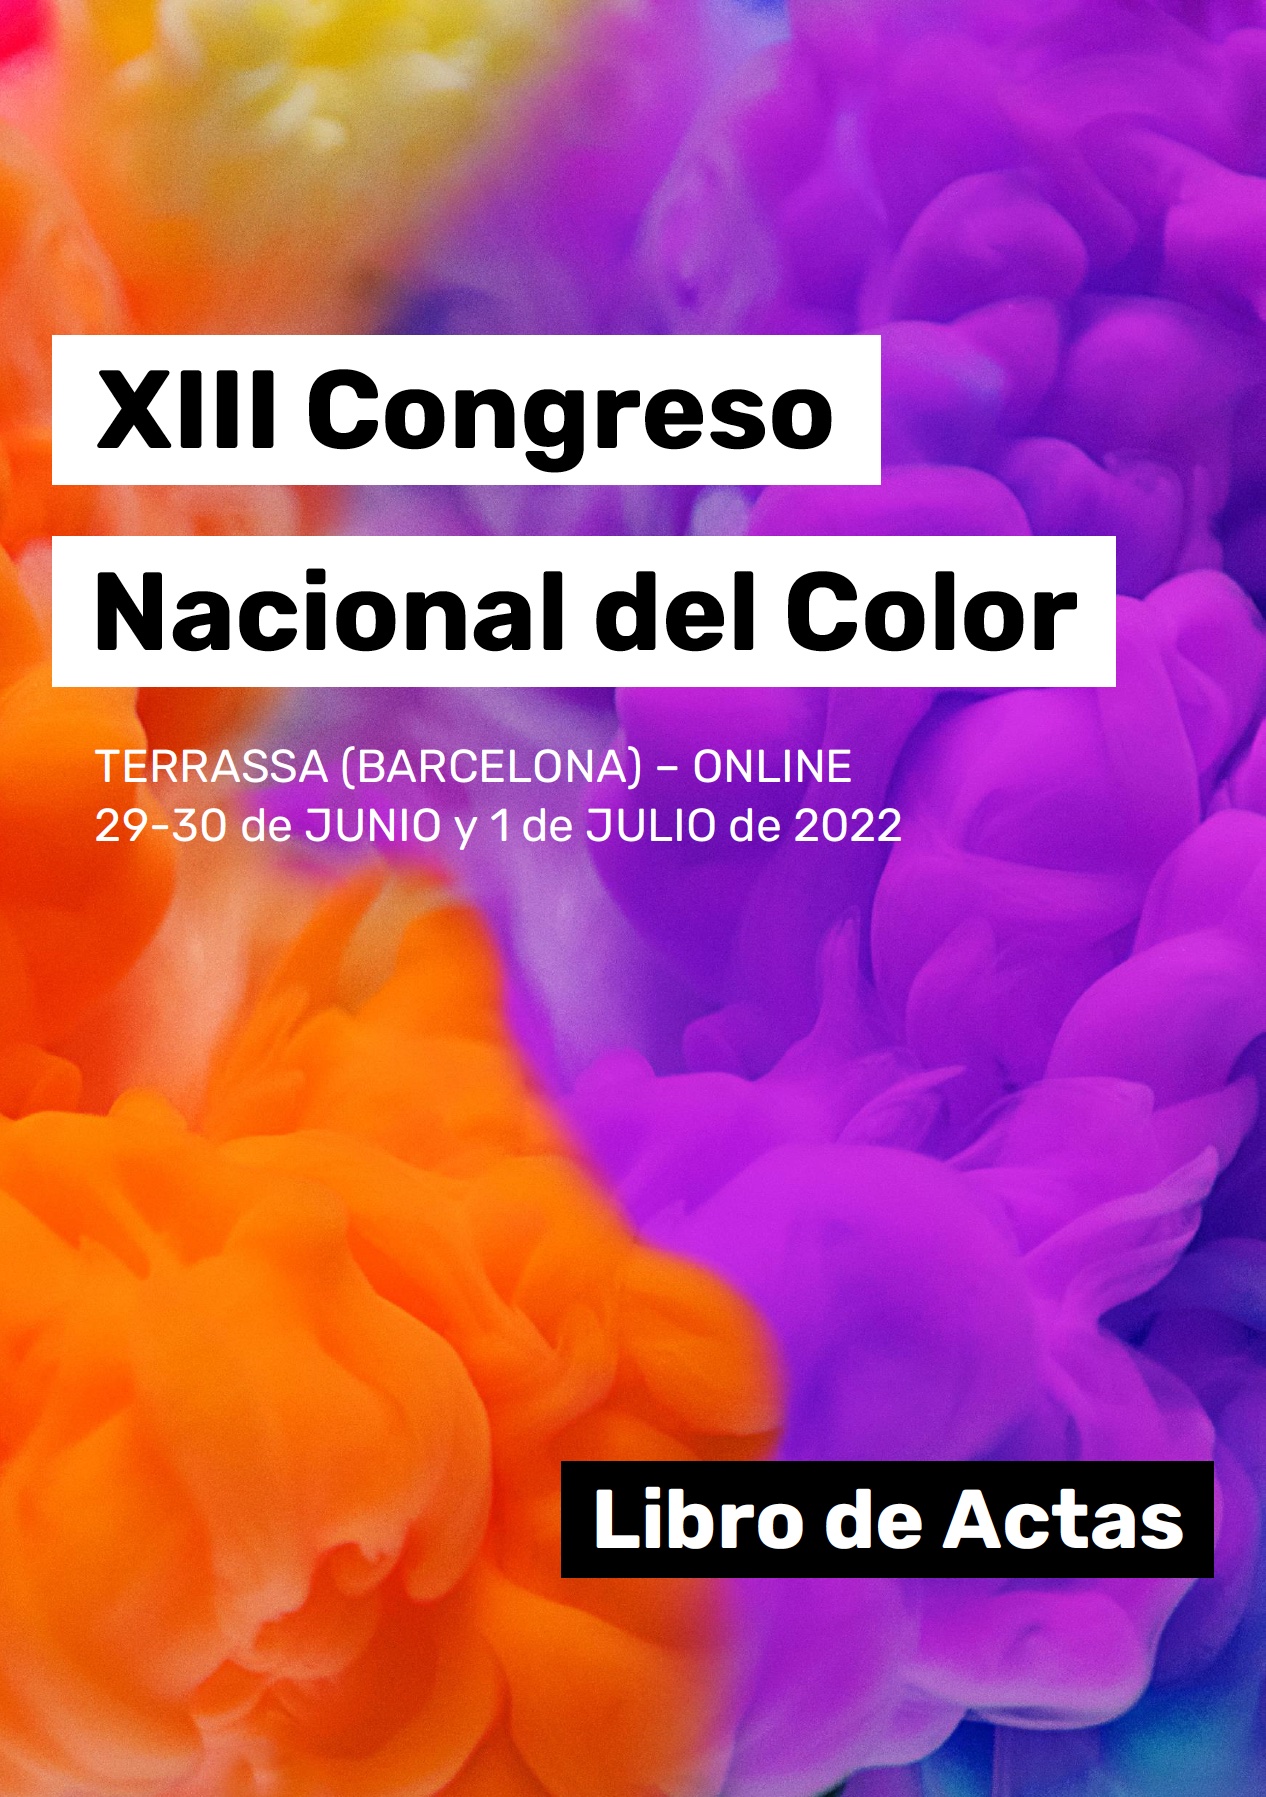 XIII Congreso Nacional del Color, Libro de Actas